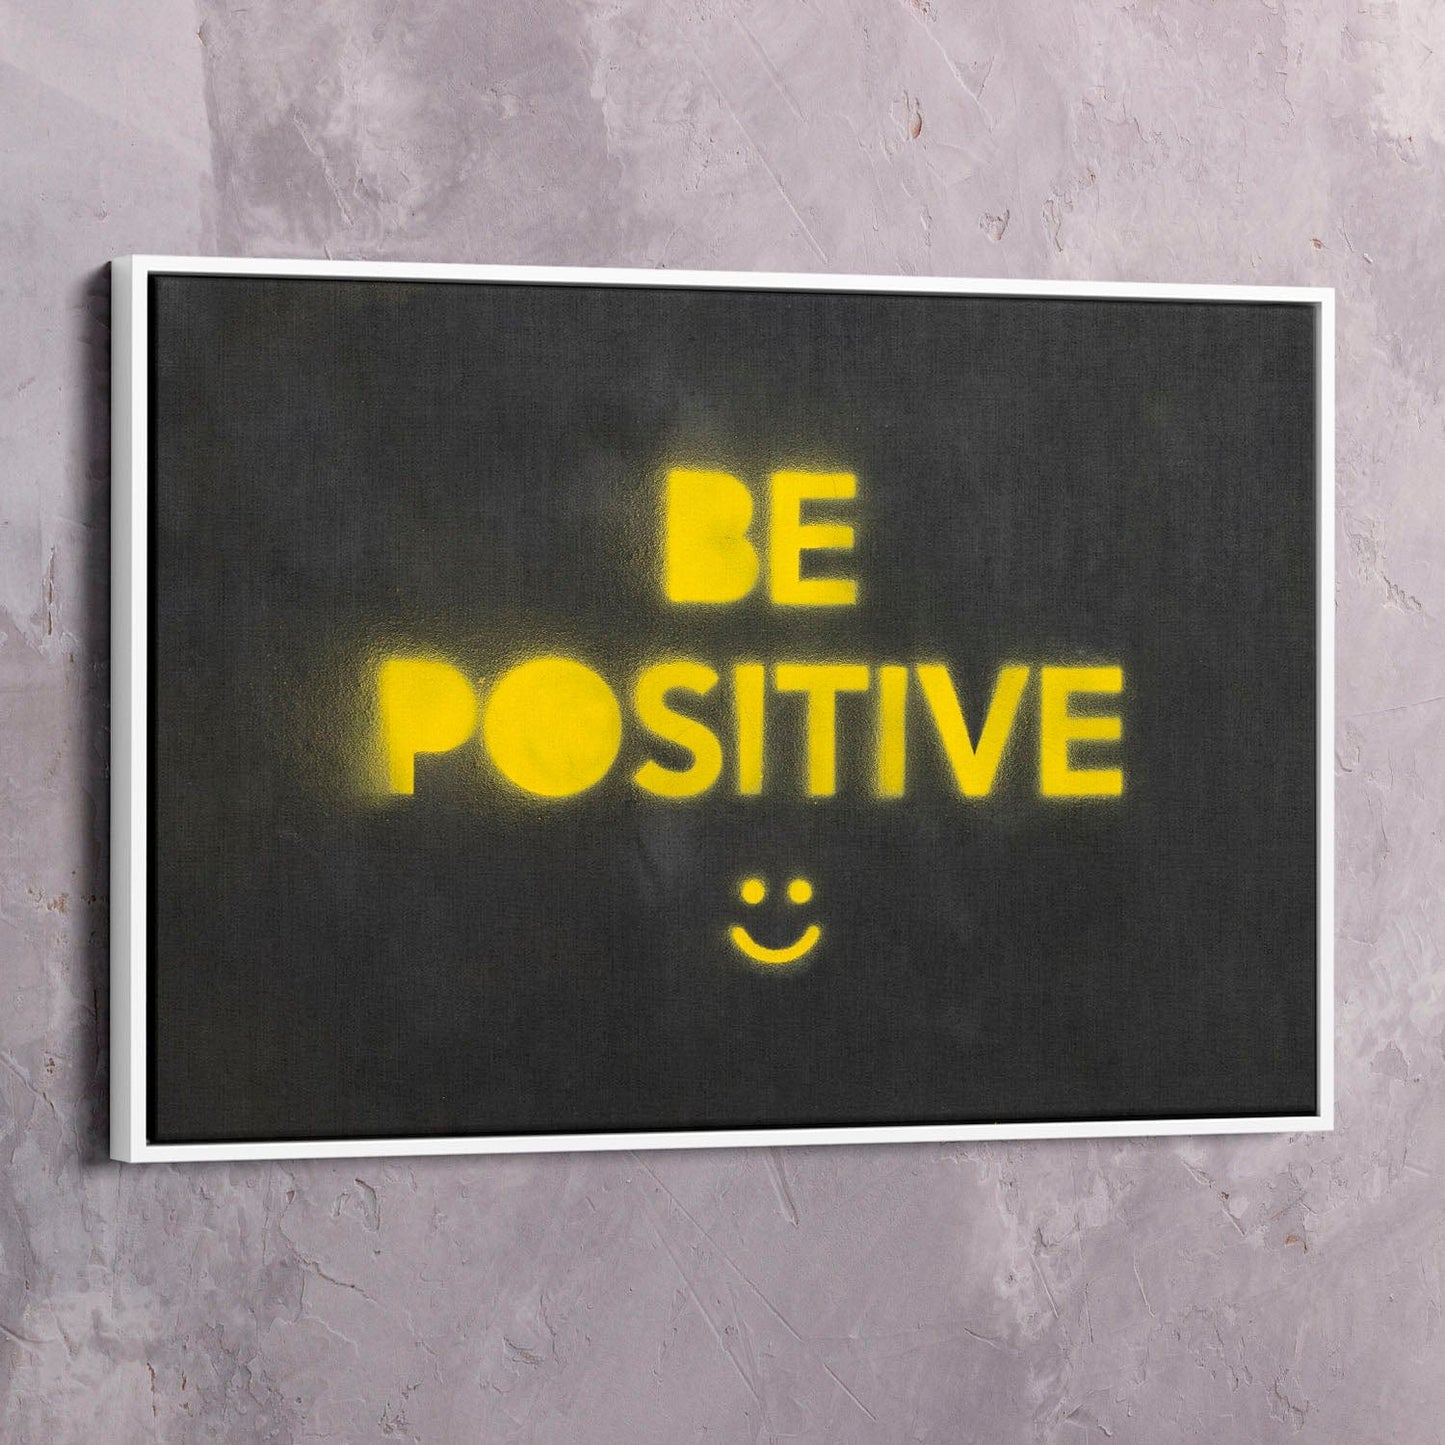 Be Positive Wall Art | Inspirational Wall Art Motivational Wall Art Quotes Office Art | ImpaktMaker Exclusive Canvas Art Landscape